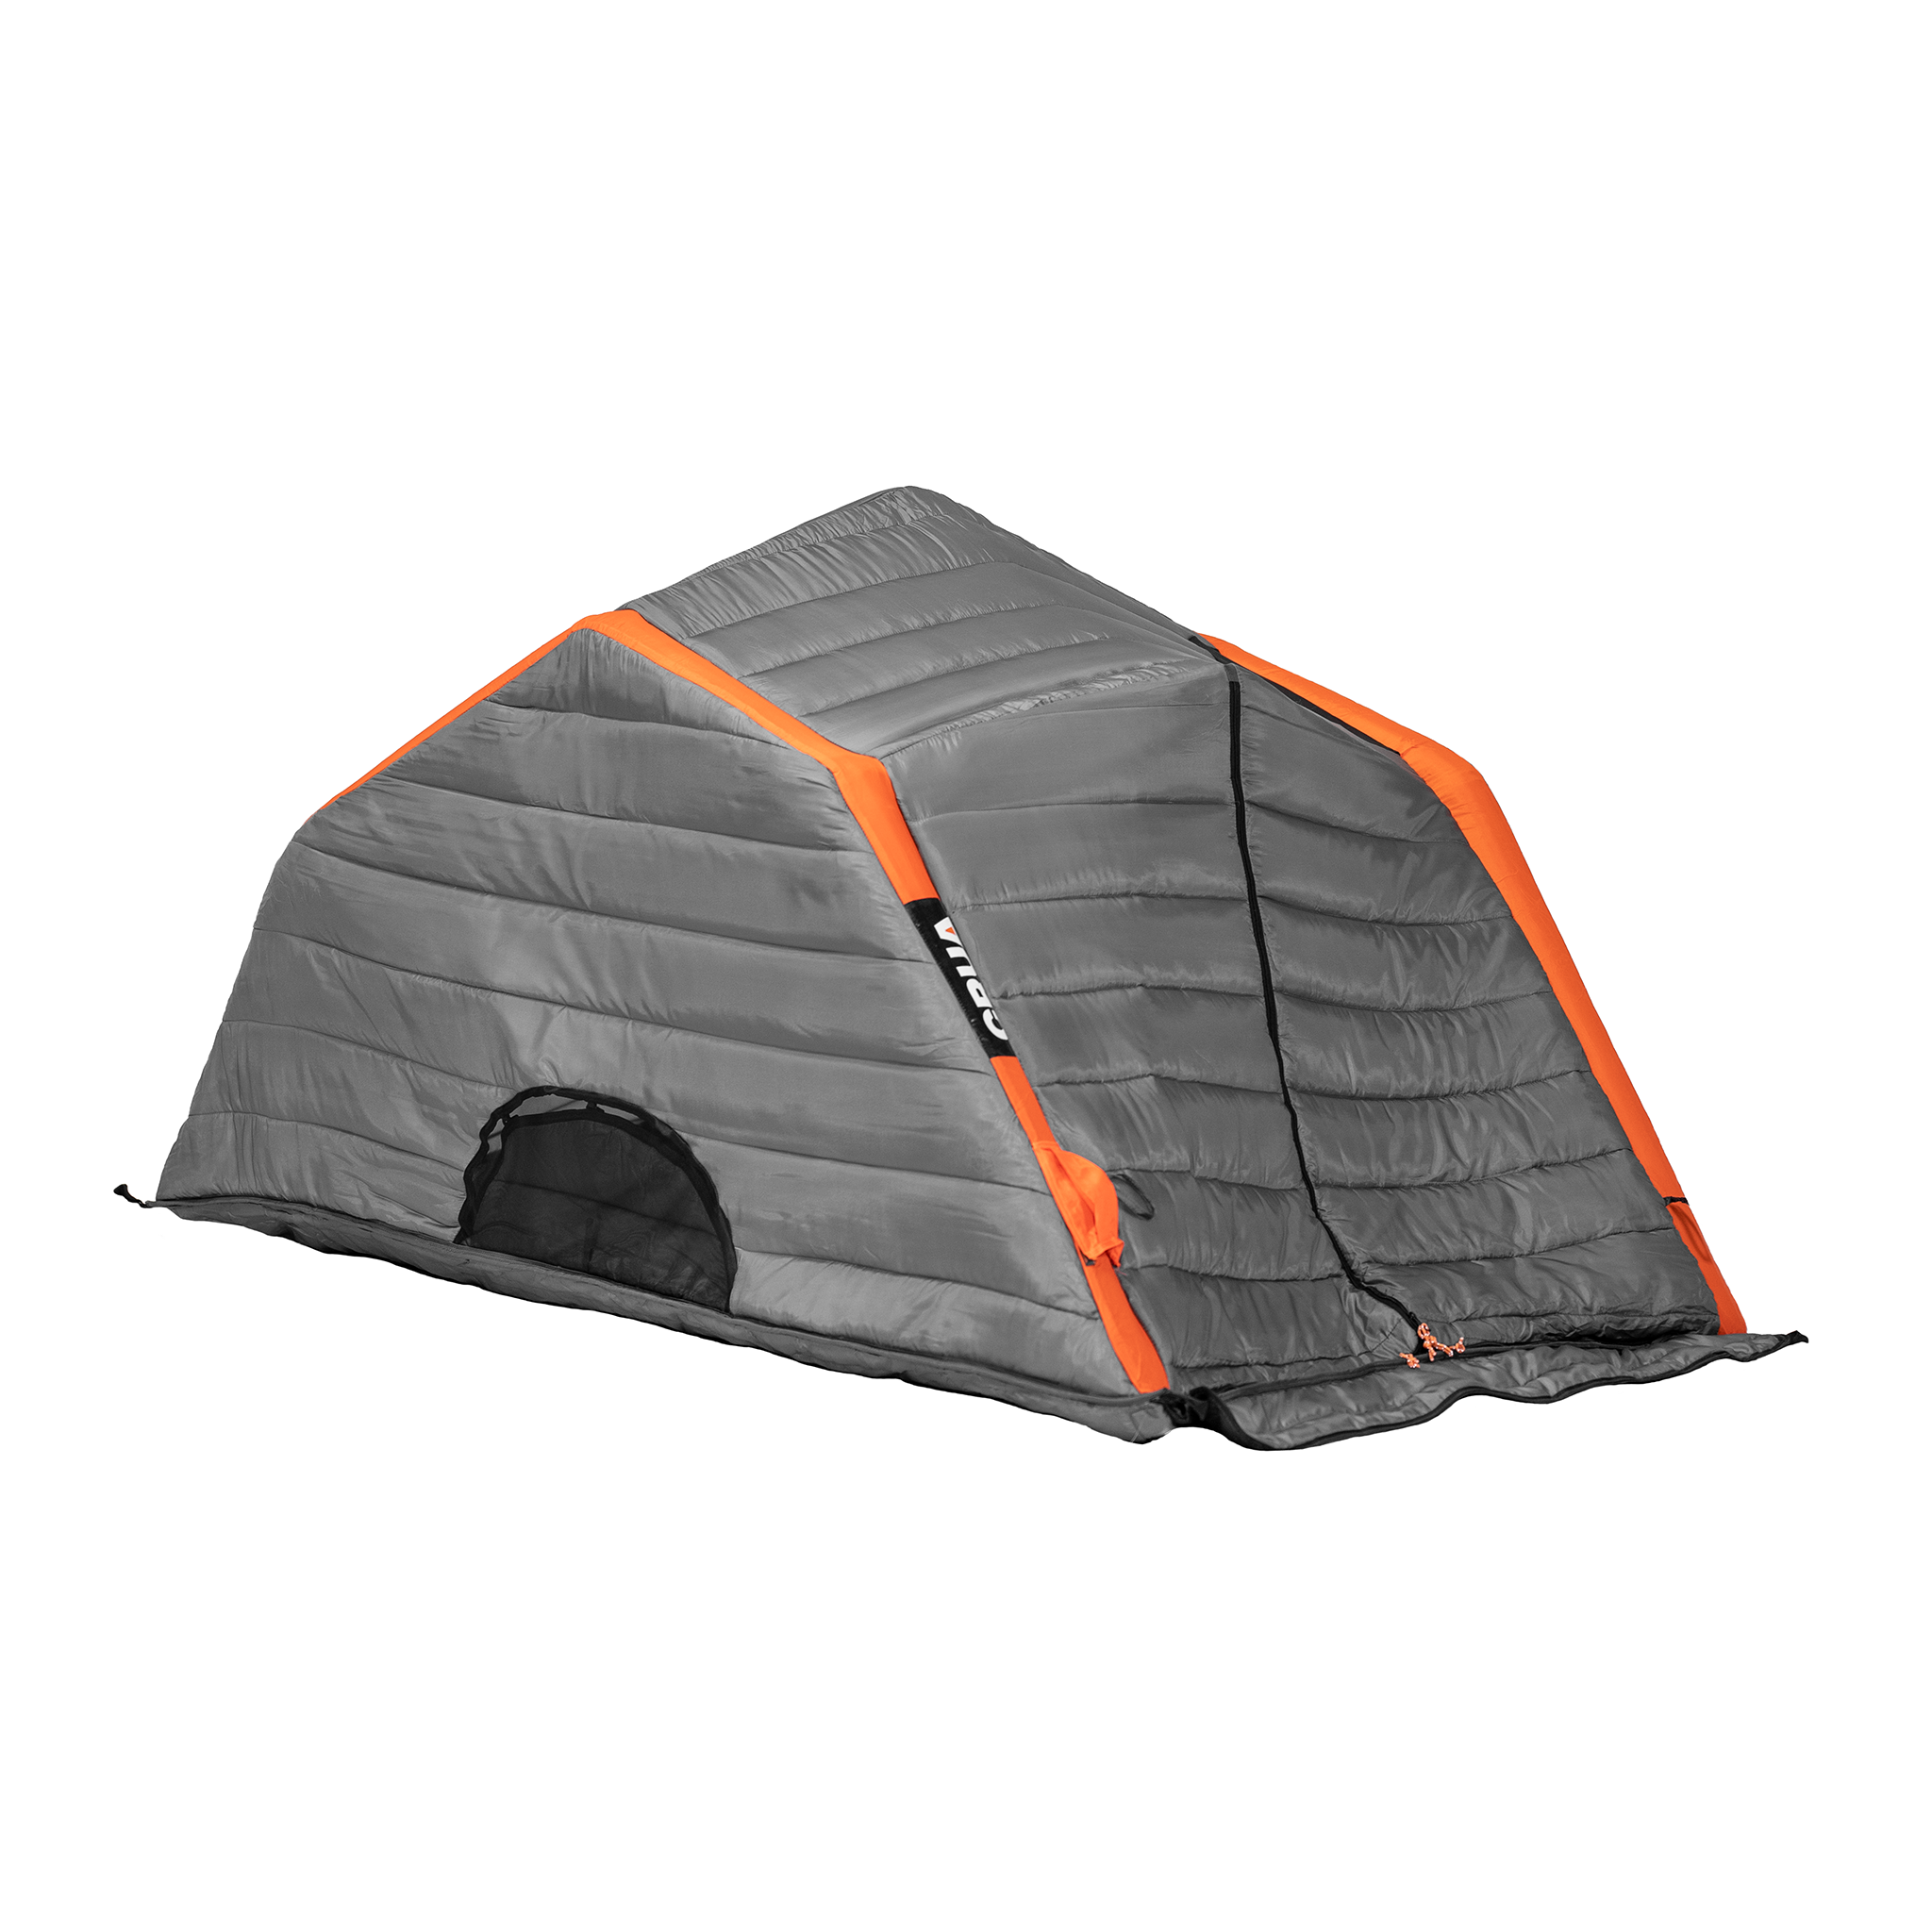 Culla Haul Maxx | 3 Person Insulated Inner Tent